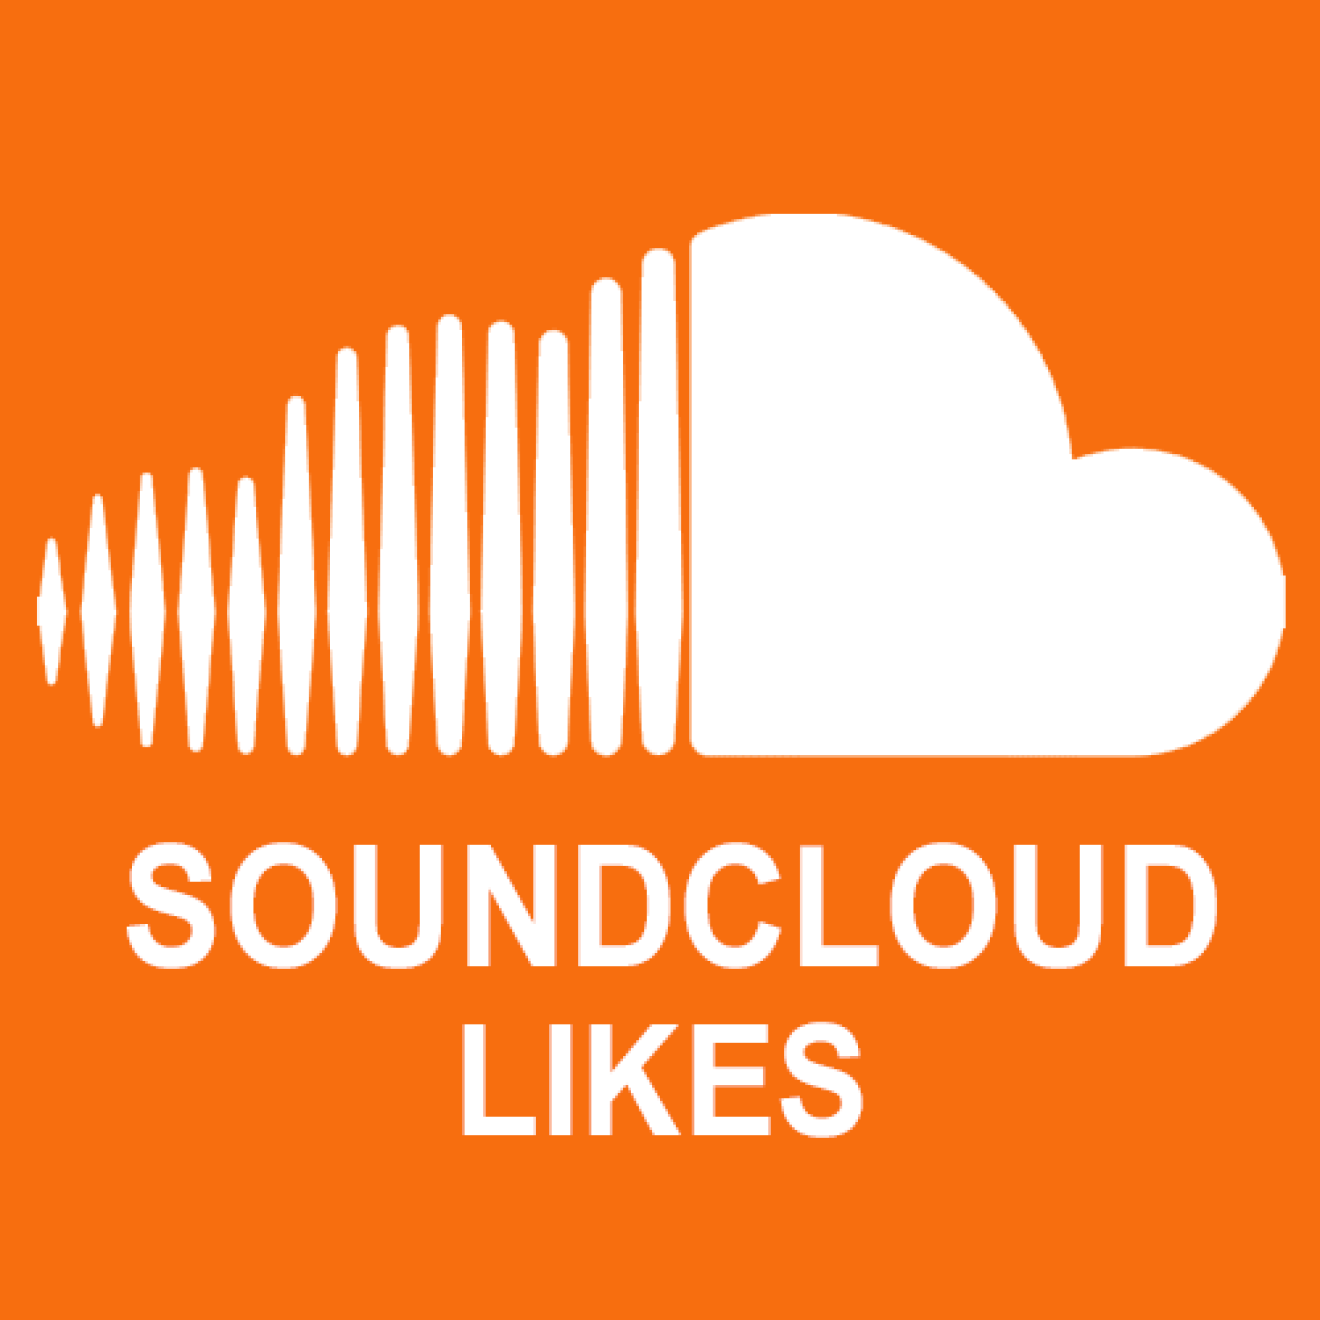 50000 Soundcloud Likes / Gefällt mir Angaben für Dich